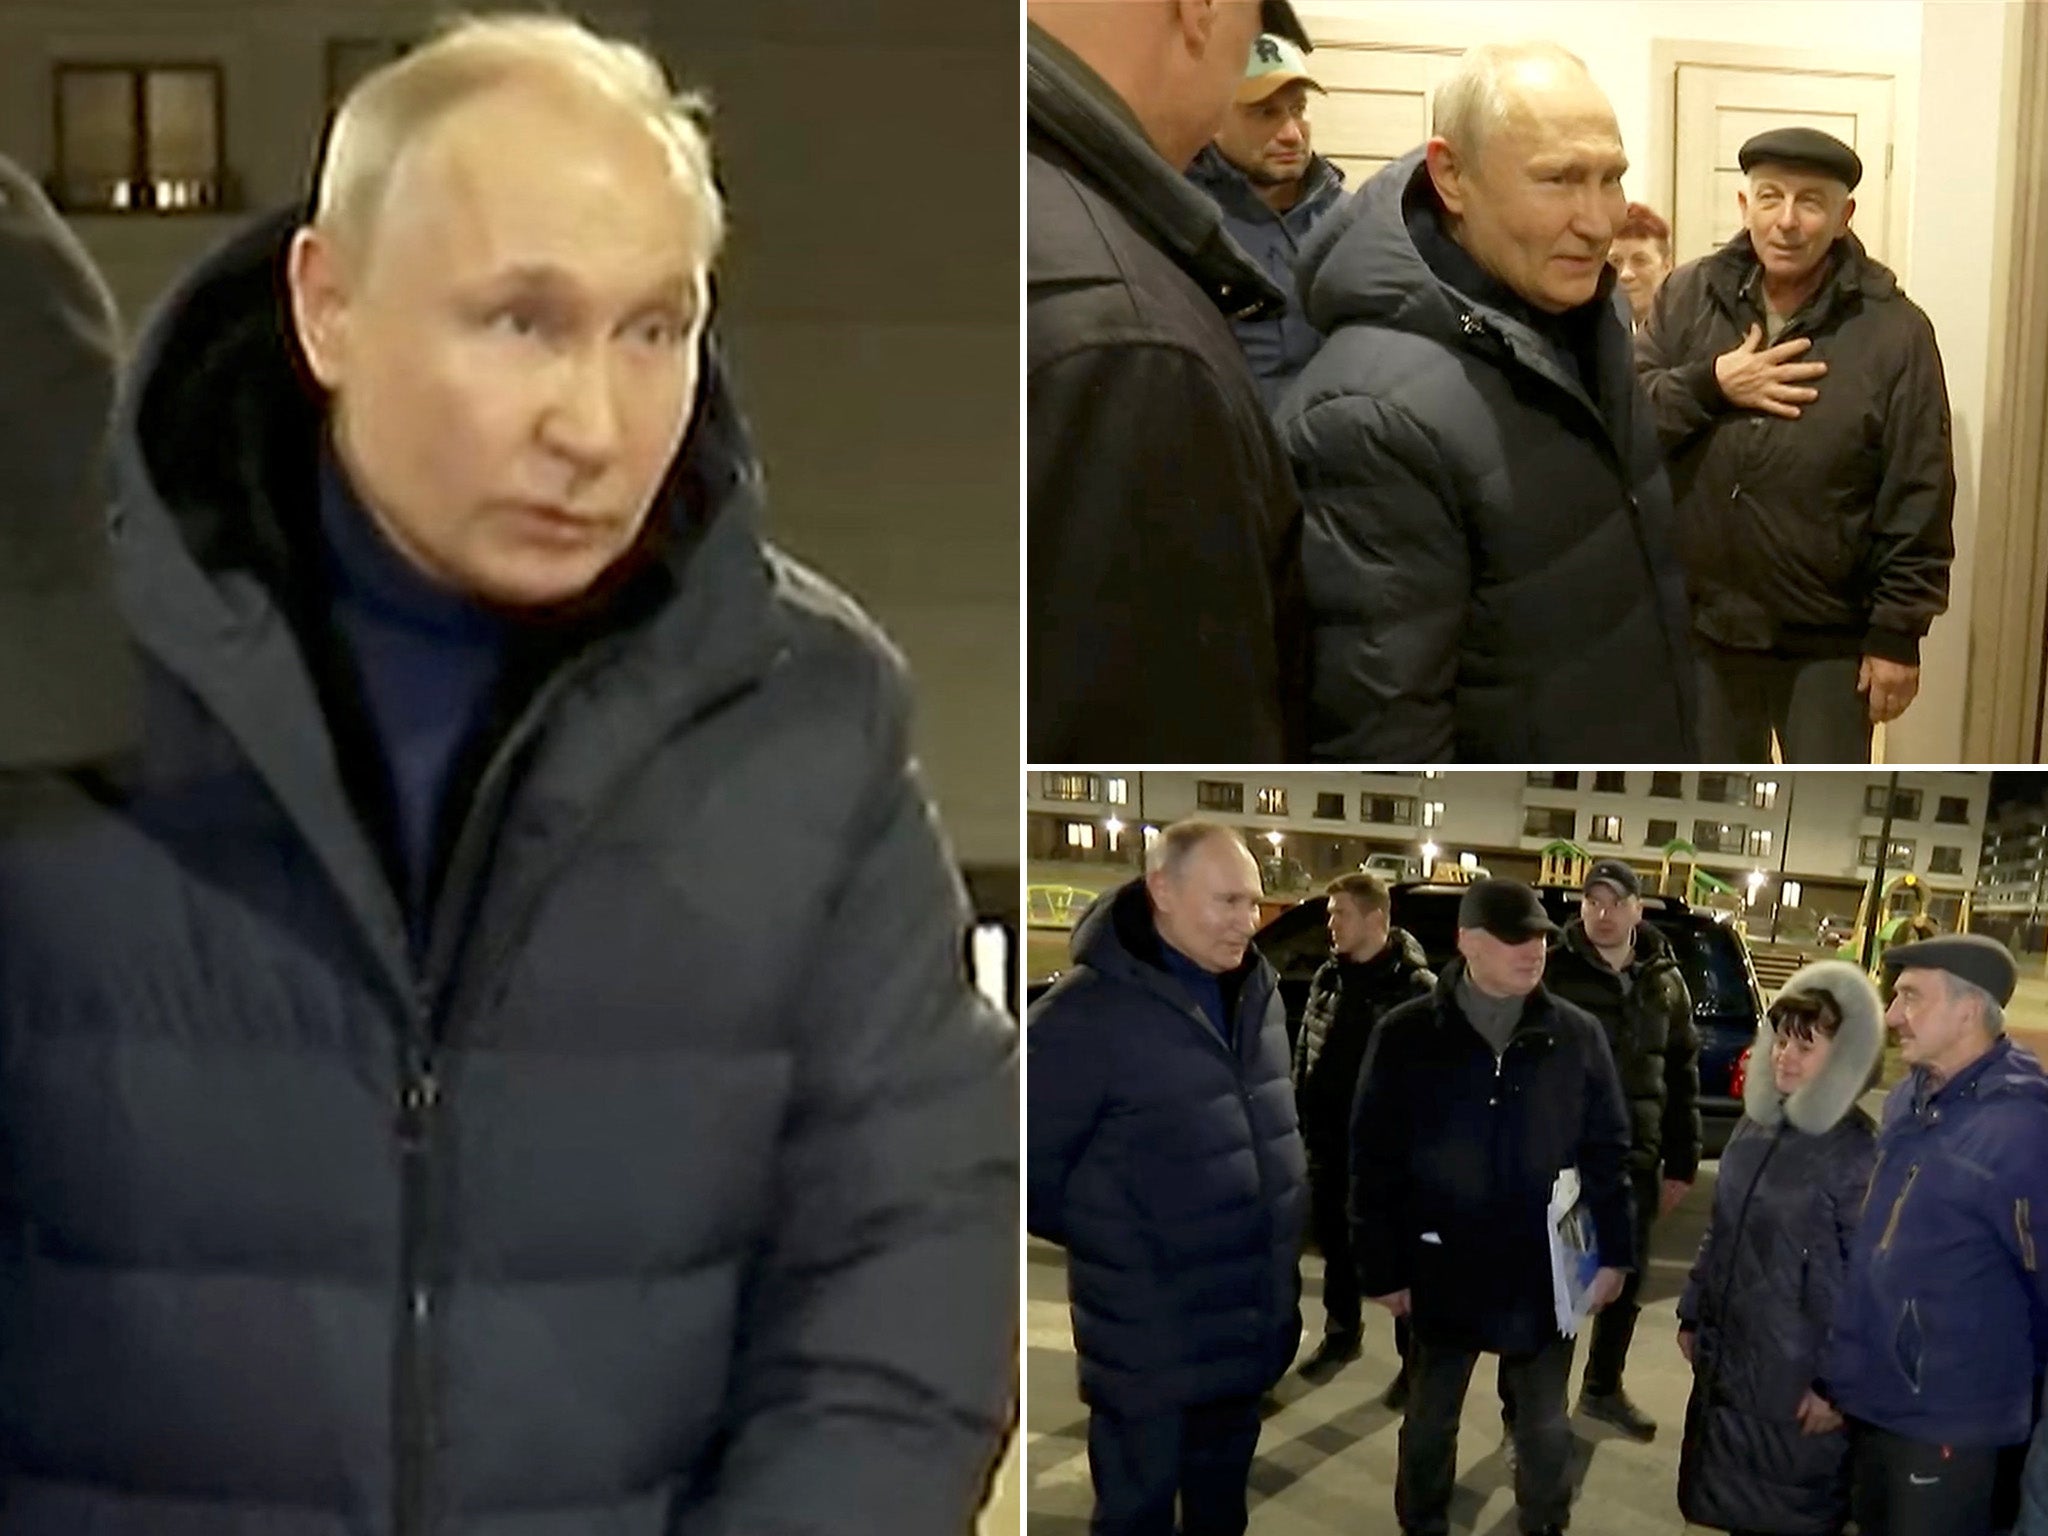 ‘Criminal’ Vladimir Putin visits destroyed Mariupol after ICC issues arrest warrant